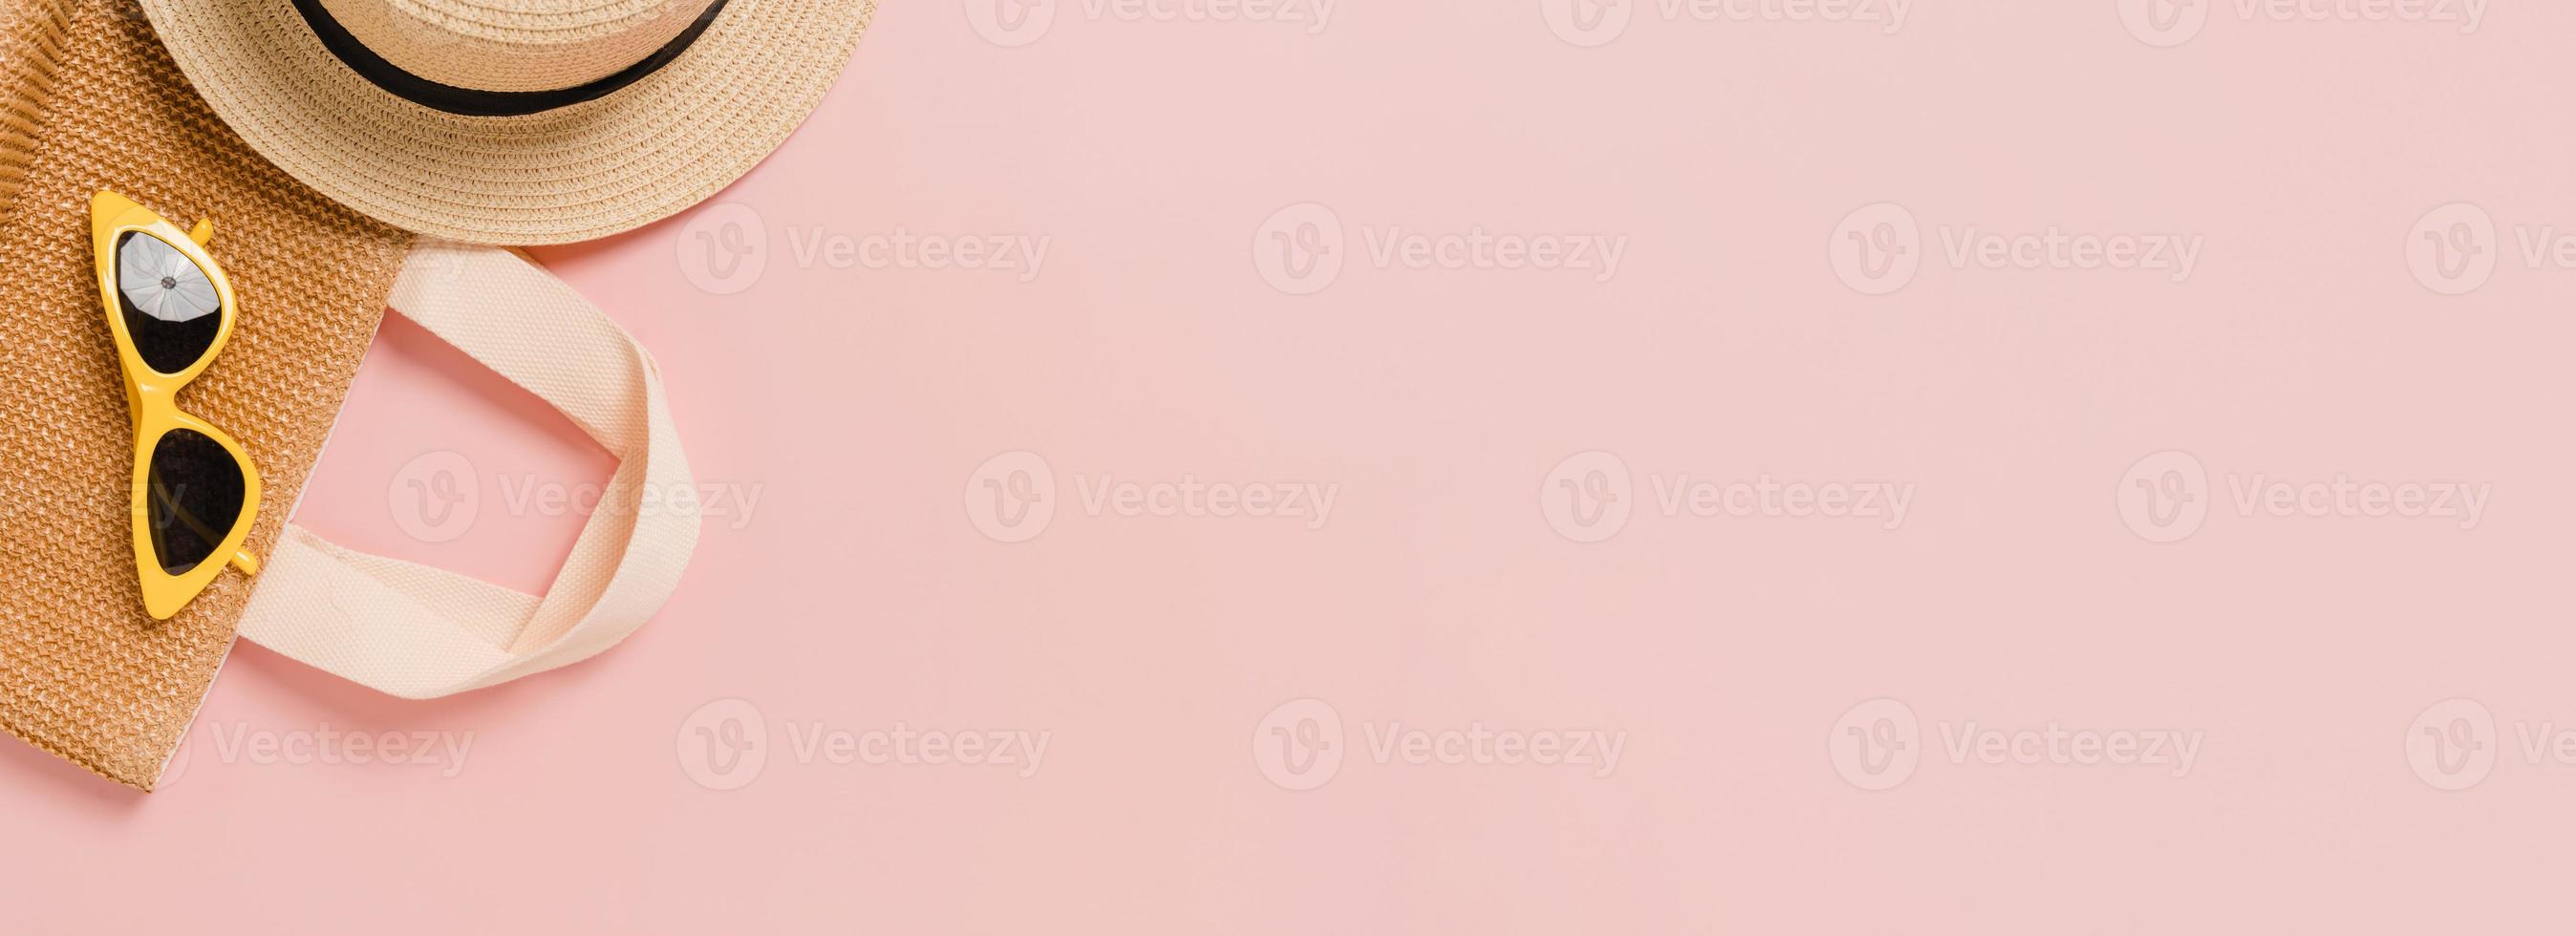 plano creativo de viajes vacaciones primavera o verano moda tropical. Accesorios de playa de vista superior sobre fondo de color rosa pastel. banner panorámico con espacio de copia para texto y área publicitaria. foto